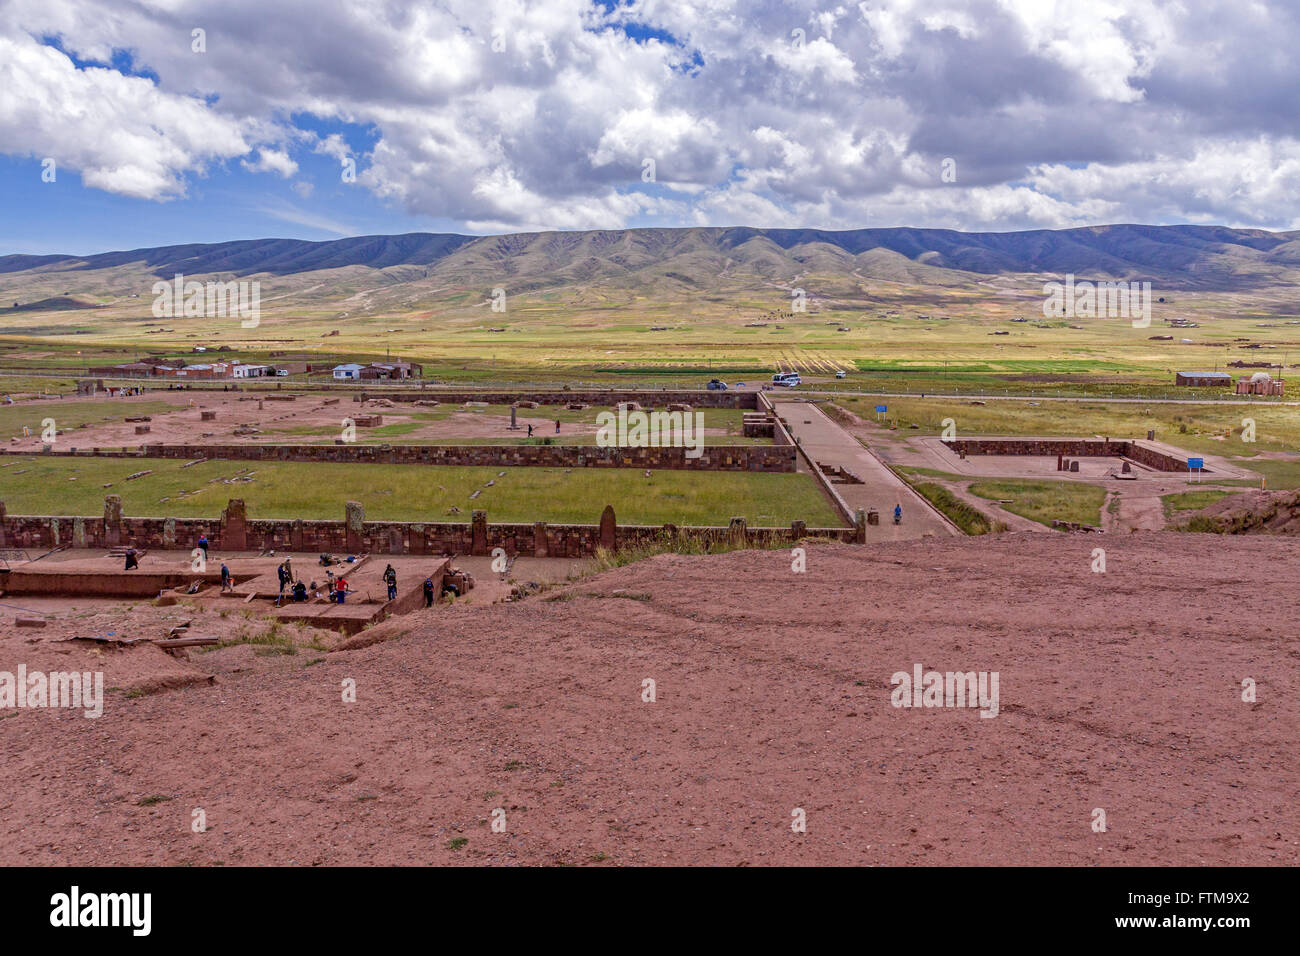 Erhöhte Aussicht auf Tiwanaku. Bolivien. (Spanisch: Tiahuanaco oder Tiahuanacu) ist eine präkolumbianische archäologische Stätte im Westen Boliviens in der Nähe des Titicacasees. Stockfoto